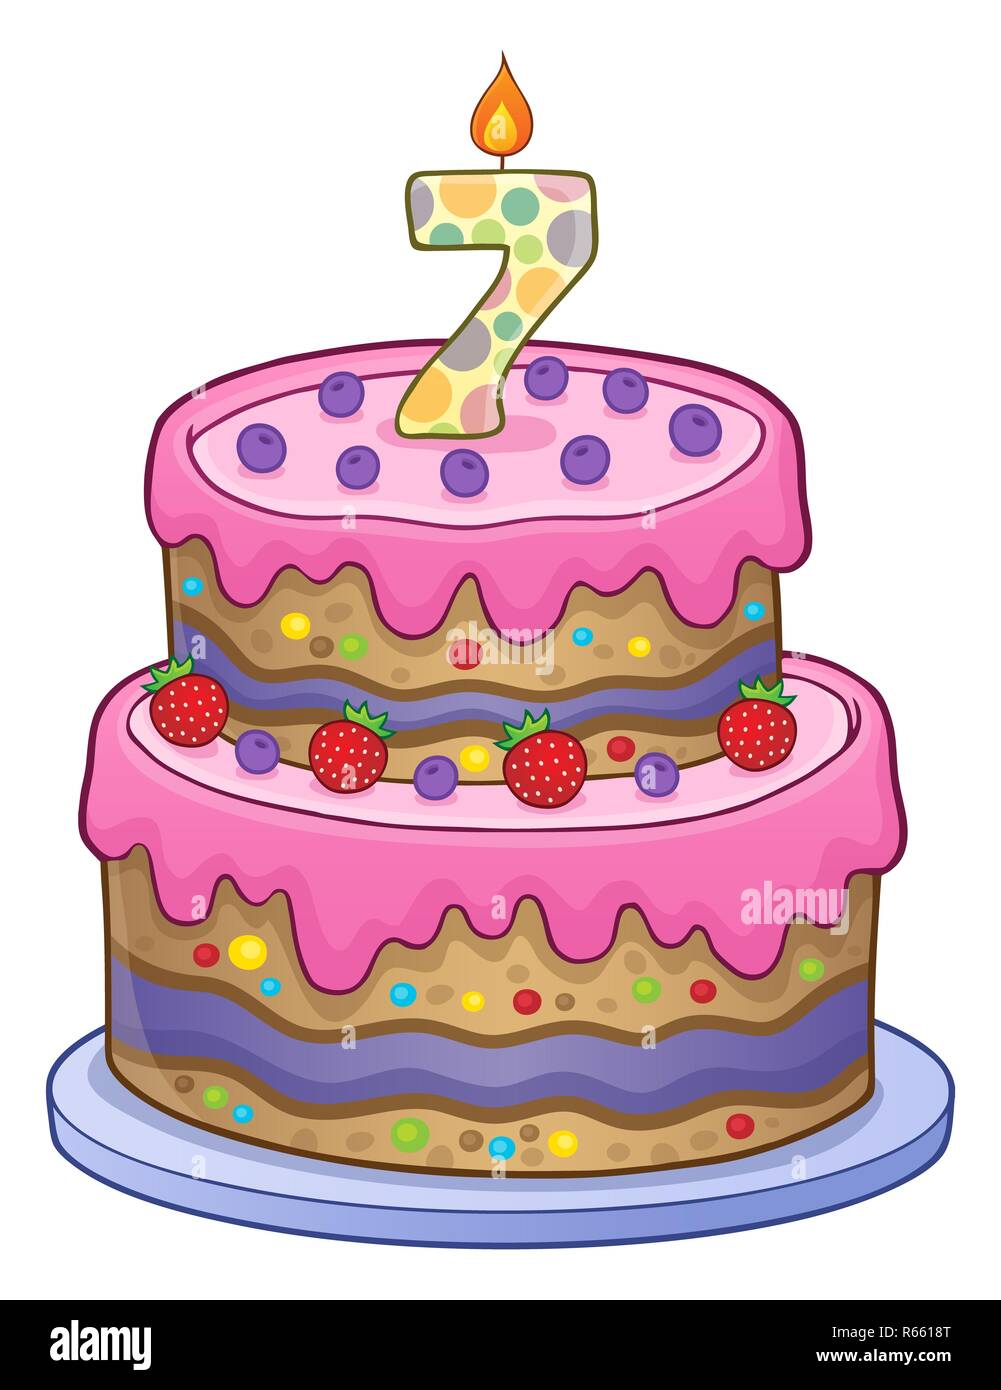 Pastel de cumpleaños imagen durante 7 años Foto de stock